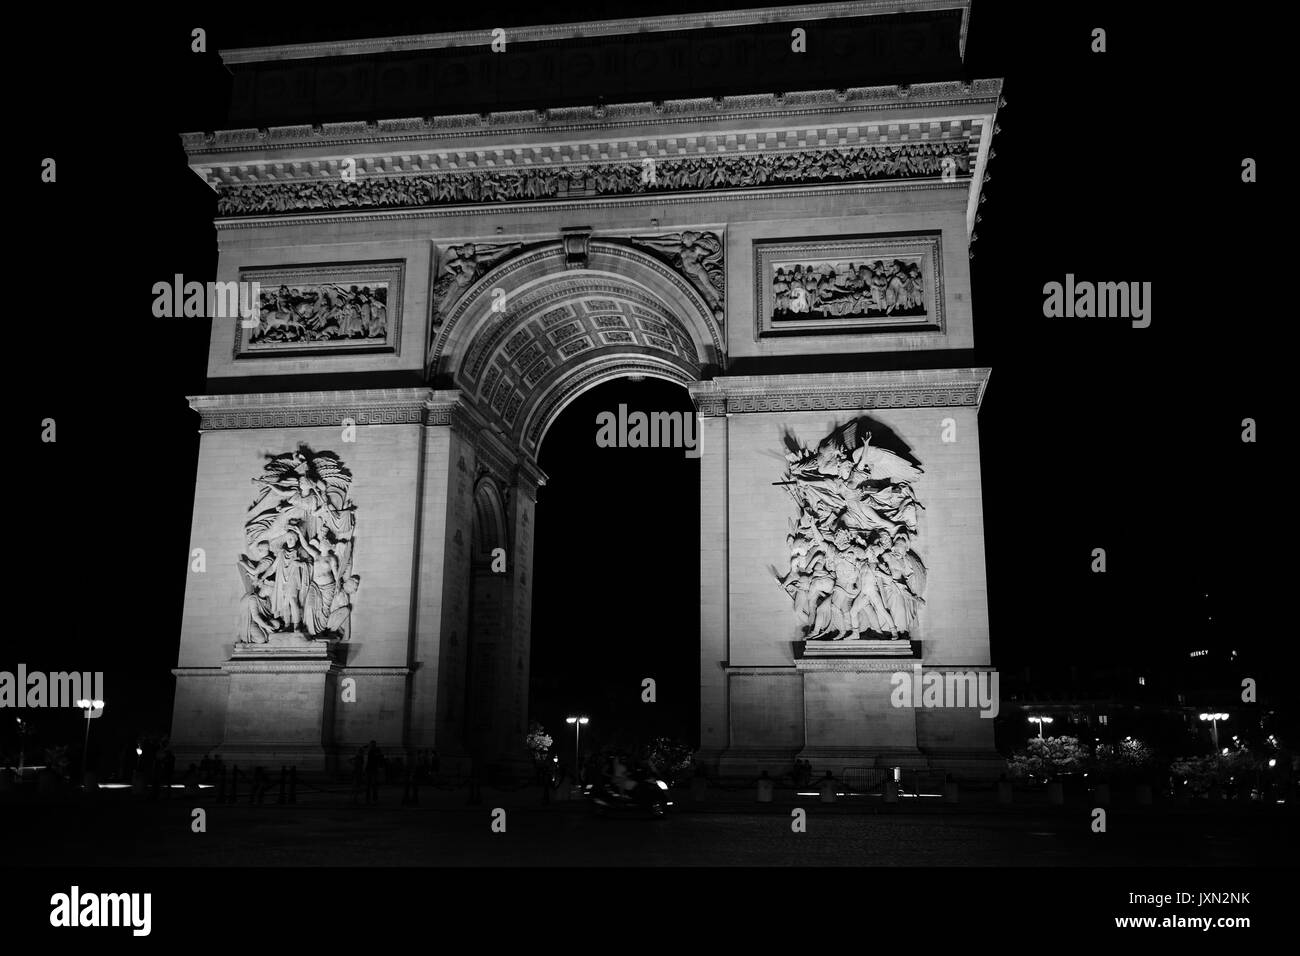 Ein Schuss in der Nacht des Arc de Triomphe de l'Étoile, eines der berühmtesten Denkmäler in Paris getroffen, am Ende der Champs-Élysées Stockfoto